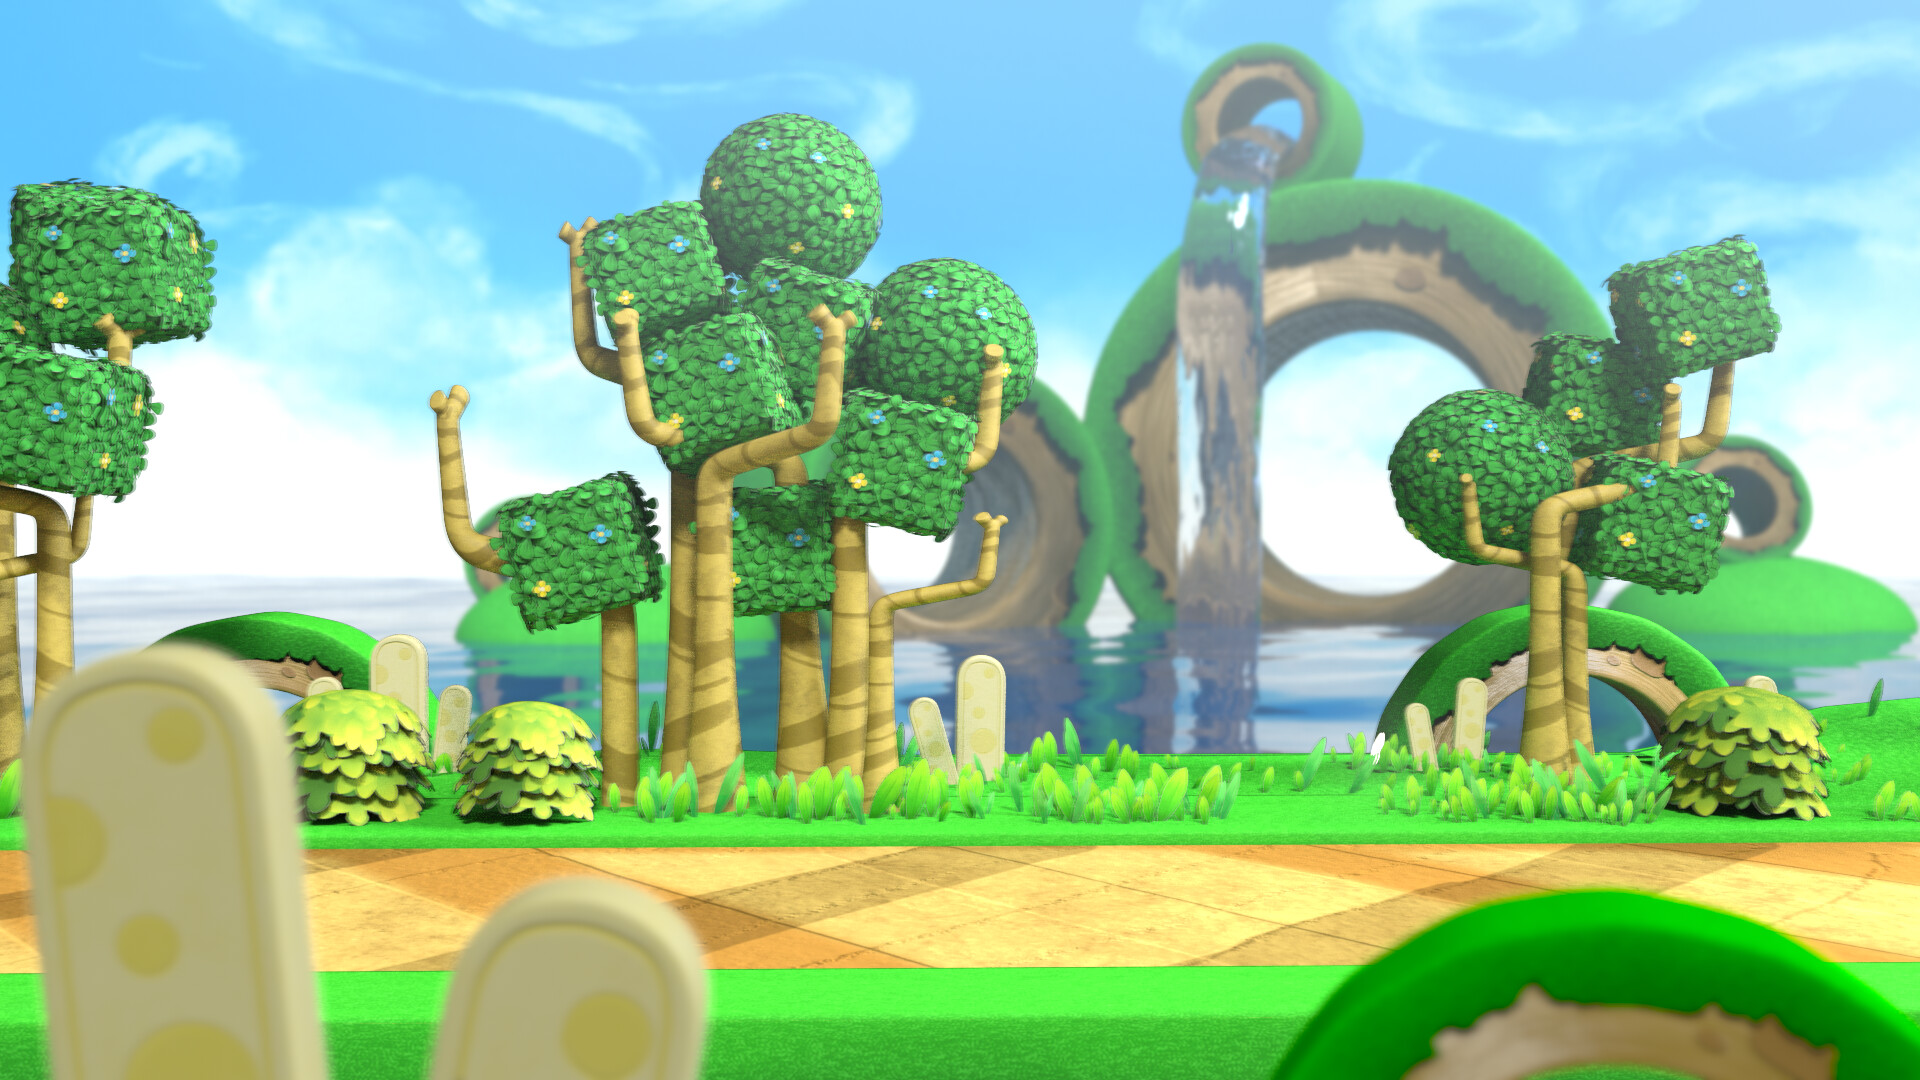 Super Kirby World là tựa game kinh điển mà bất cứ game thủ nào cũng nên thử một lần. Với nhiều cấp độ khác nhau và thử thách đầy thú vị, bạn sẽ tận hưởng những giờ phút giải trí thật sự. Hãy tham gia vào cuộc phiêu lưu cùng Kirby và trải nghiệm độc đáo của trò chơi này.